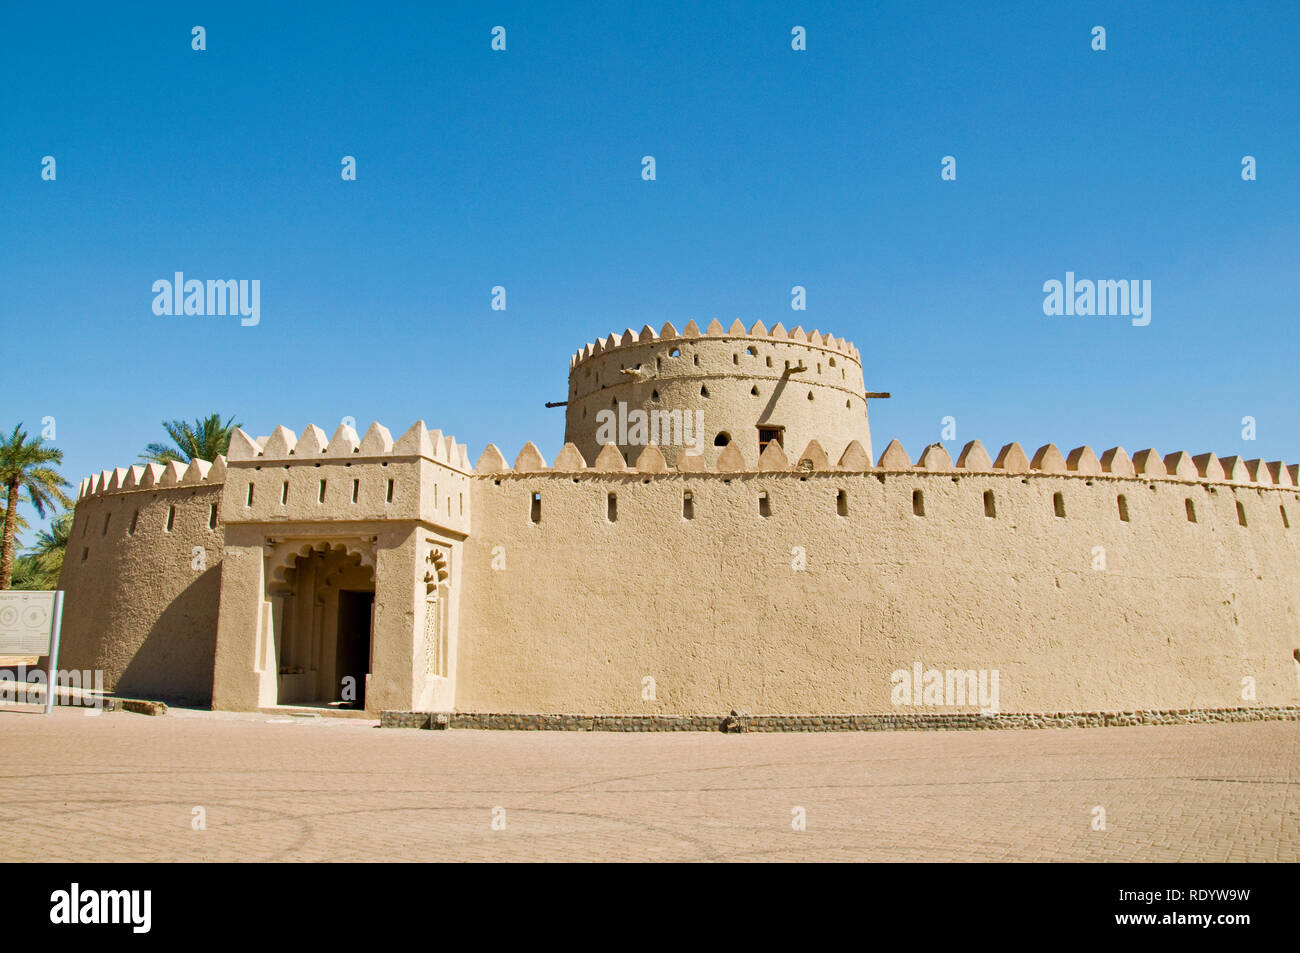 Eine alte Festung in Al Ain, VAE - ein historisches Touristenziel. Historische Stätten der Vereinigten Arabischen Emirate. Stockfoto